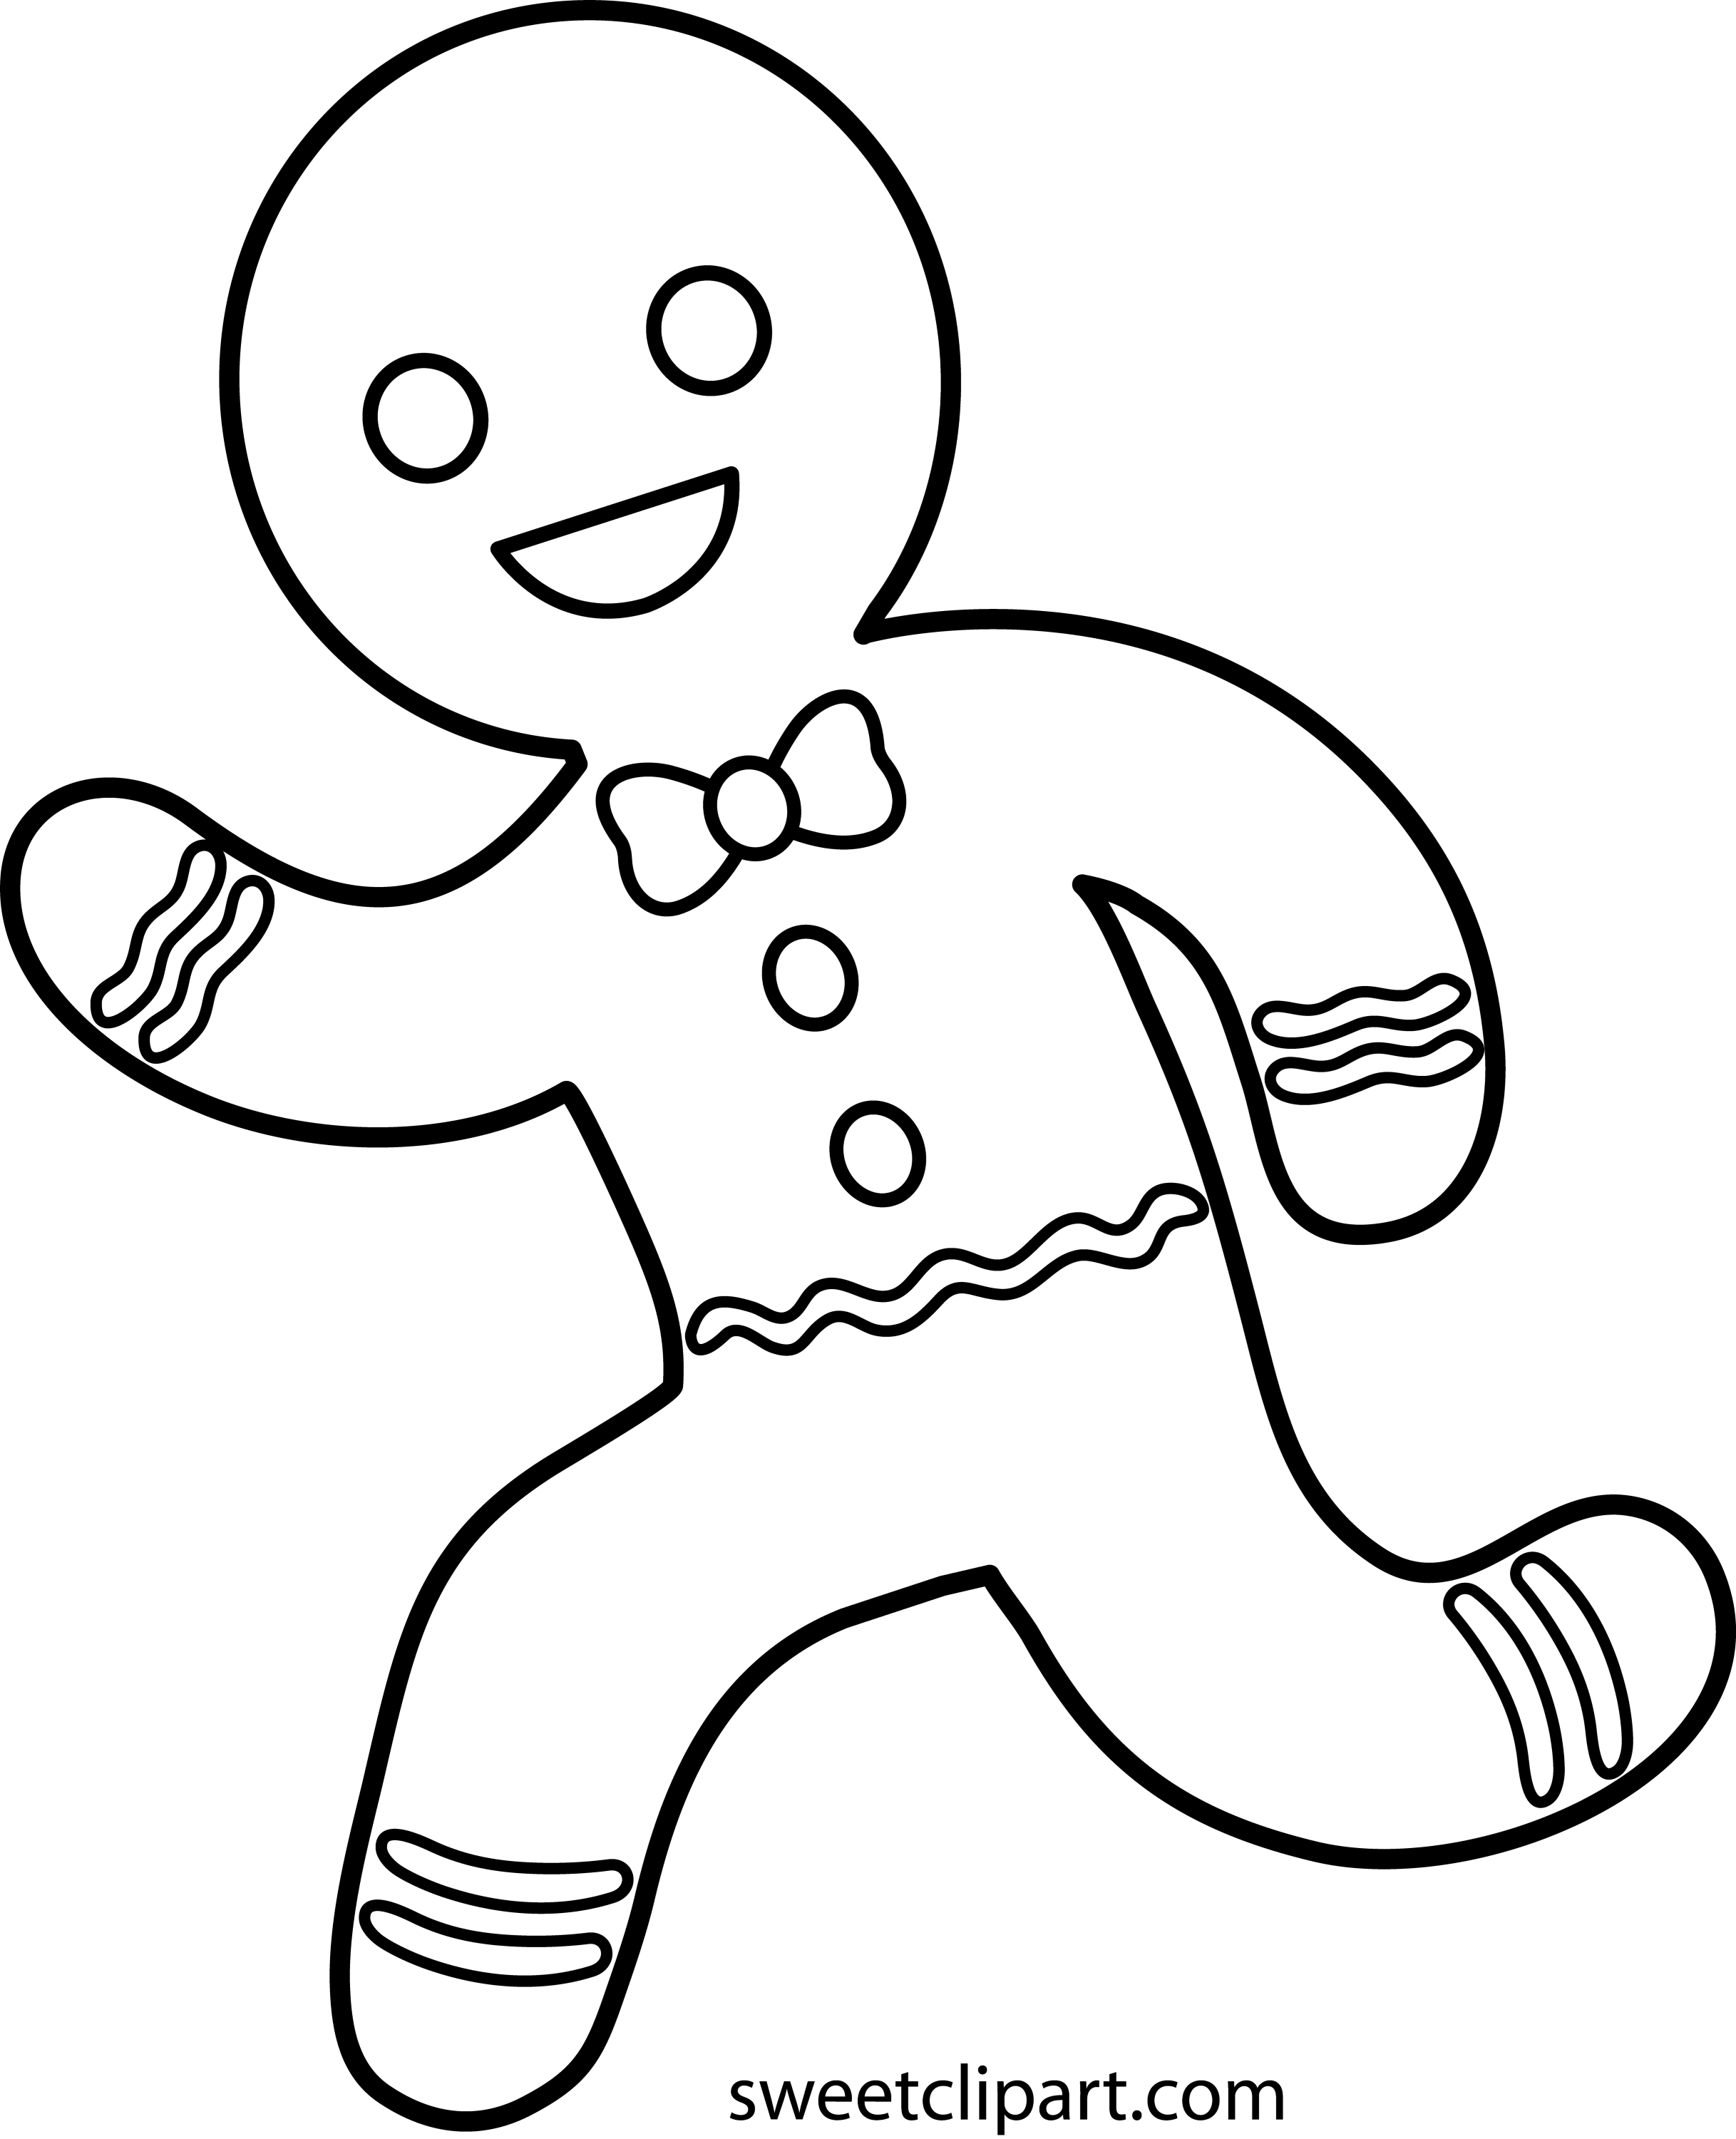 running-gingerbread-man-line-art-free-clip-art